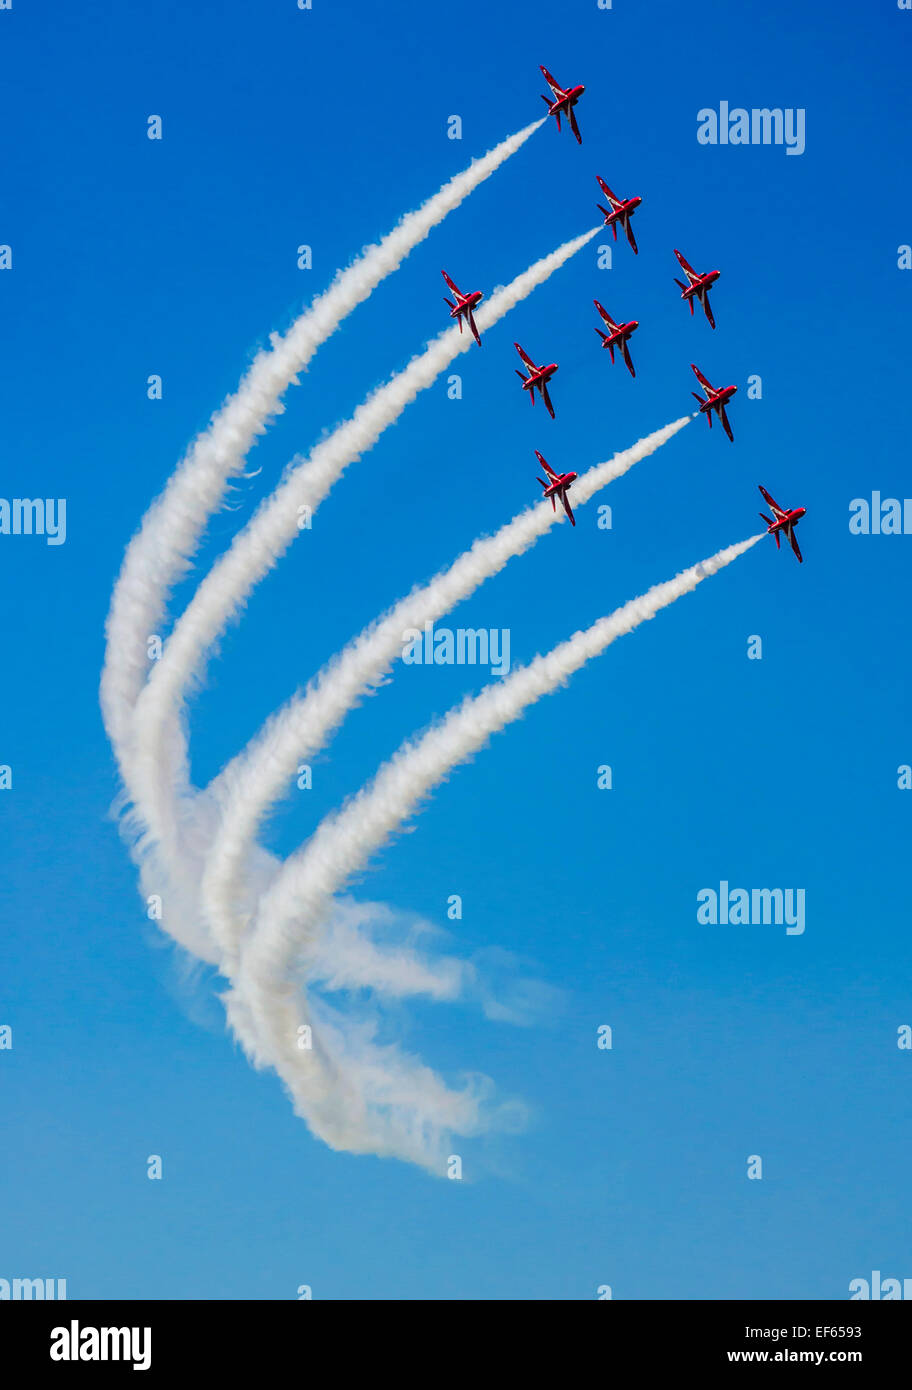 Kunstflugstaffel der Royal Air Force, die roten Pfeile Stockfoto